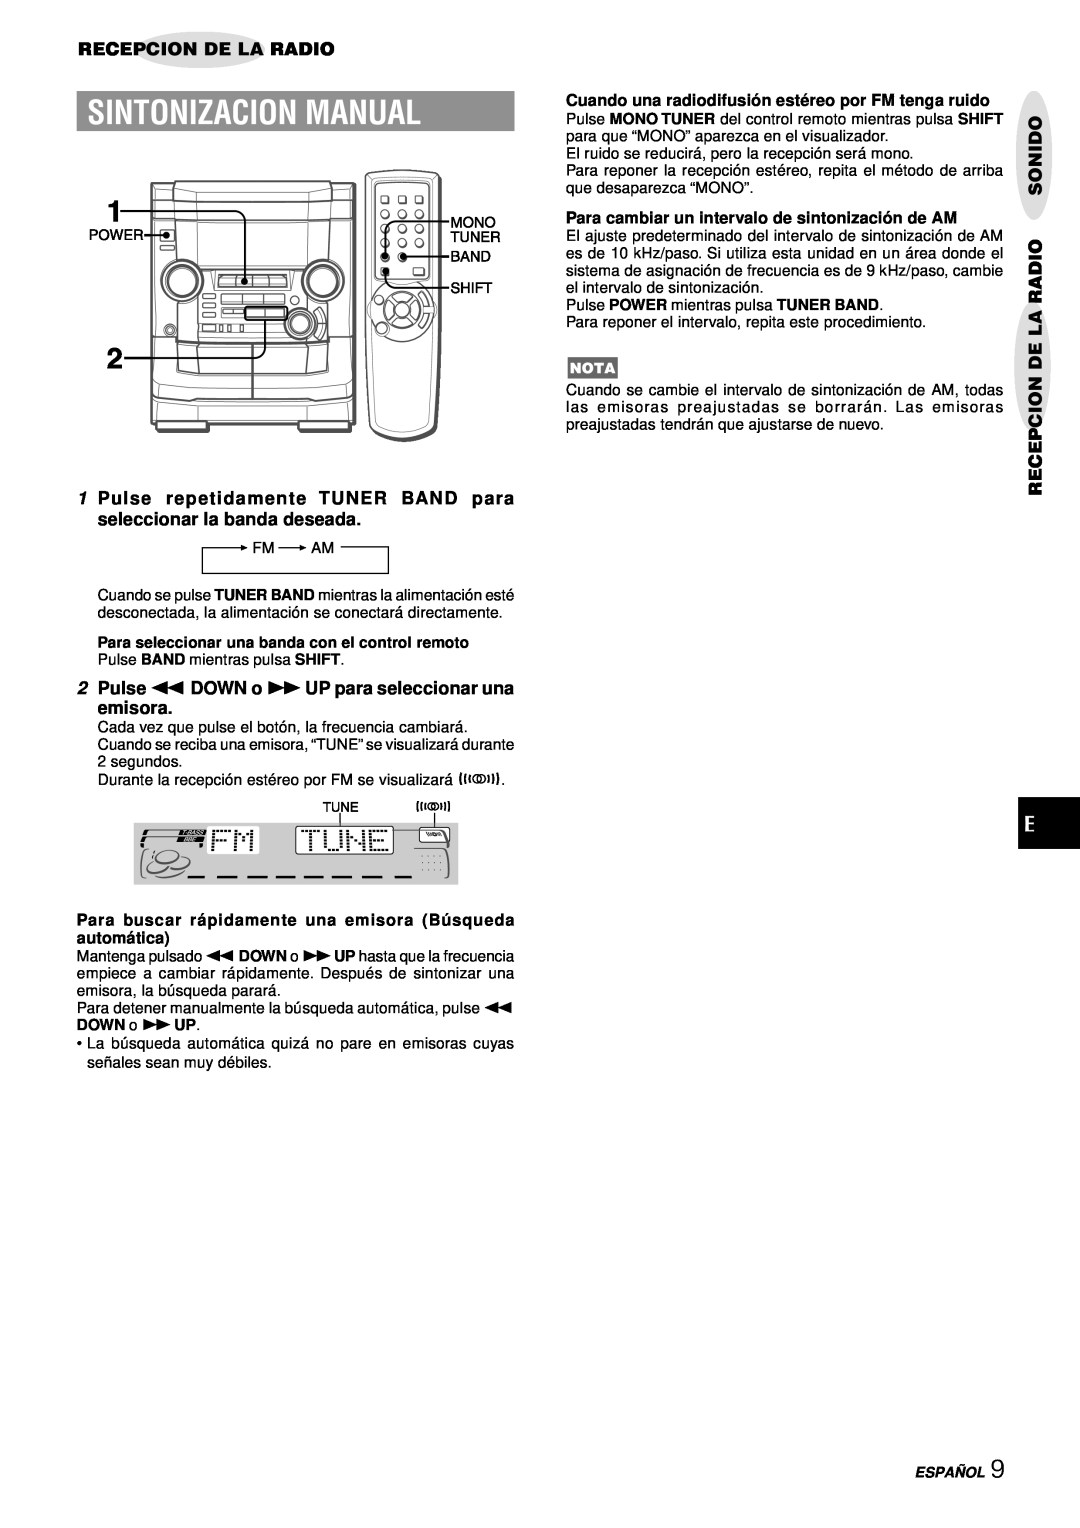 Aiwa NSX-AJ50 Sintonizacion Manual, Recepcion De La Radio, 2Pulse fDOWN o gUP para seleccionar una emisora, Sonido 